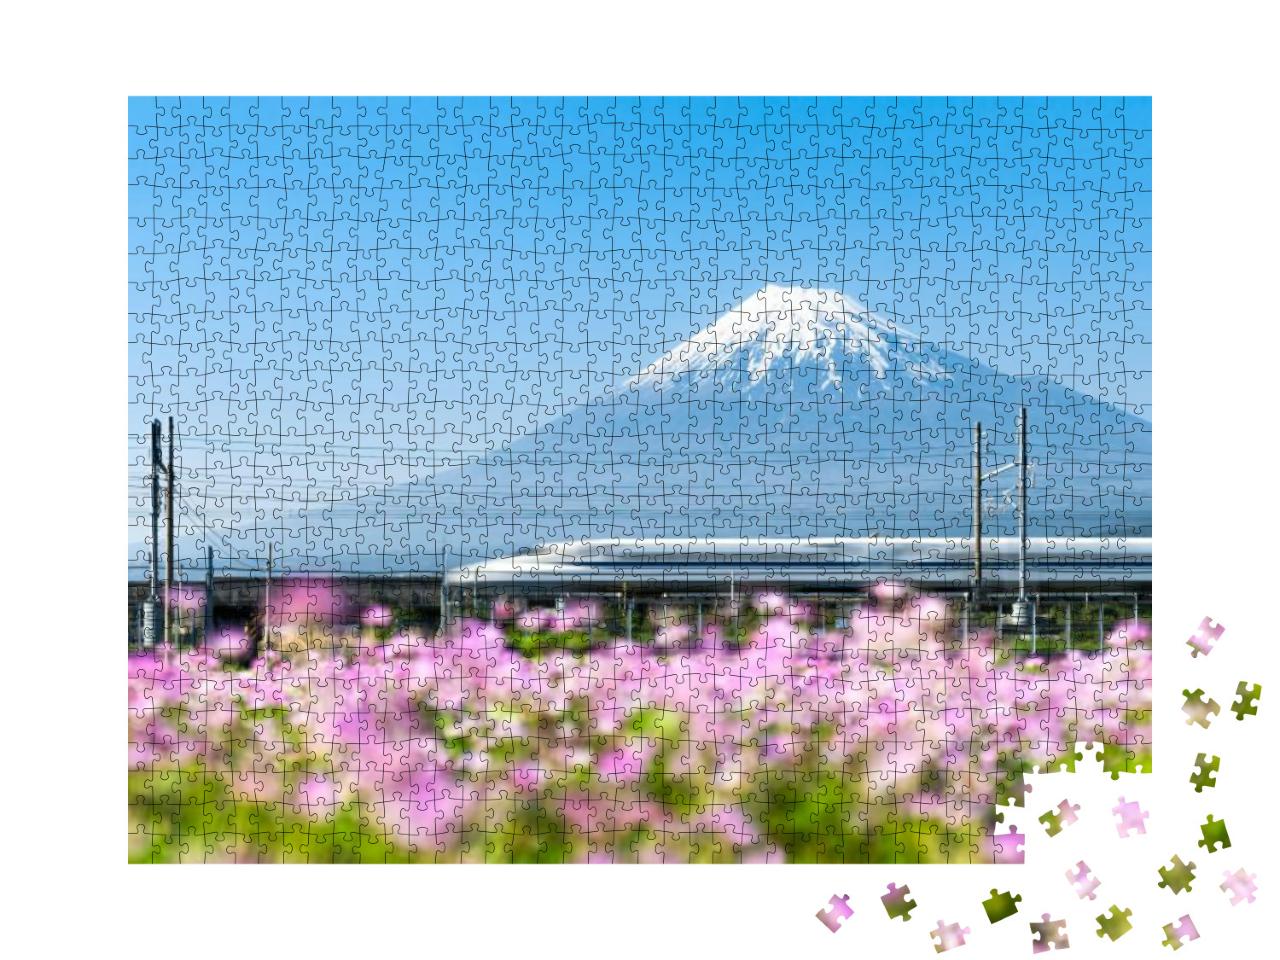 Shinkansen Bullet Train Passing by Mount Fuji, Yoshiwara... Jigsaw Puzzle with 1000 pieces